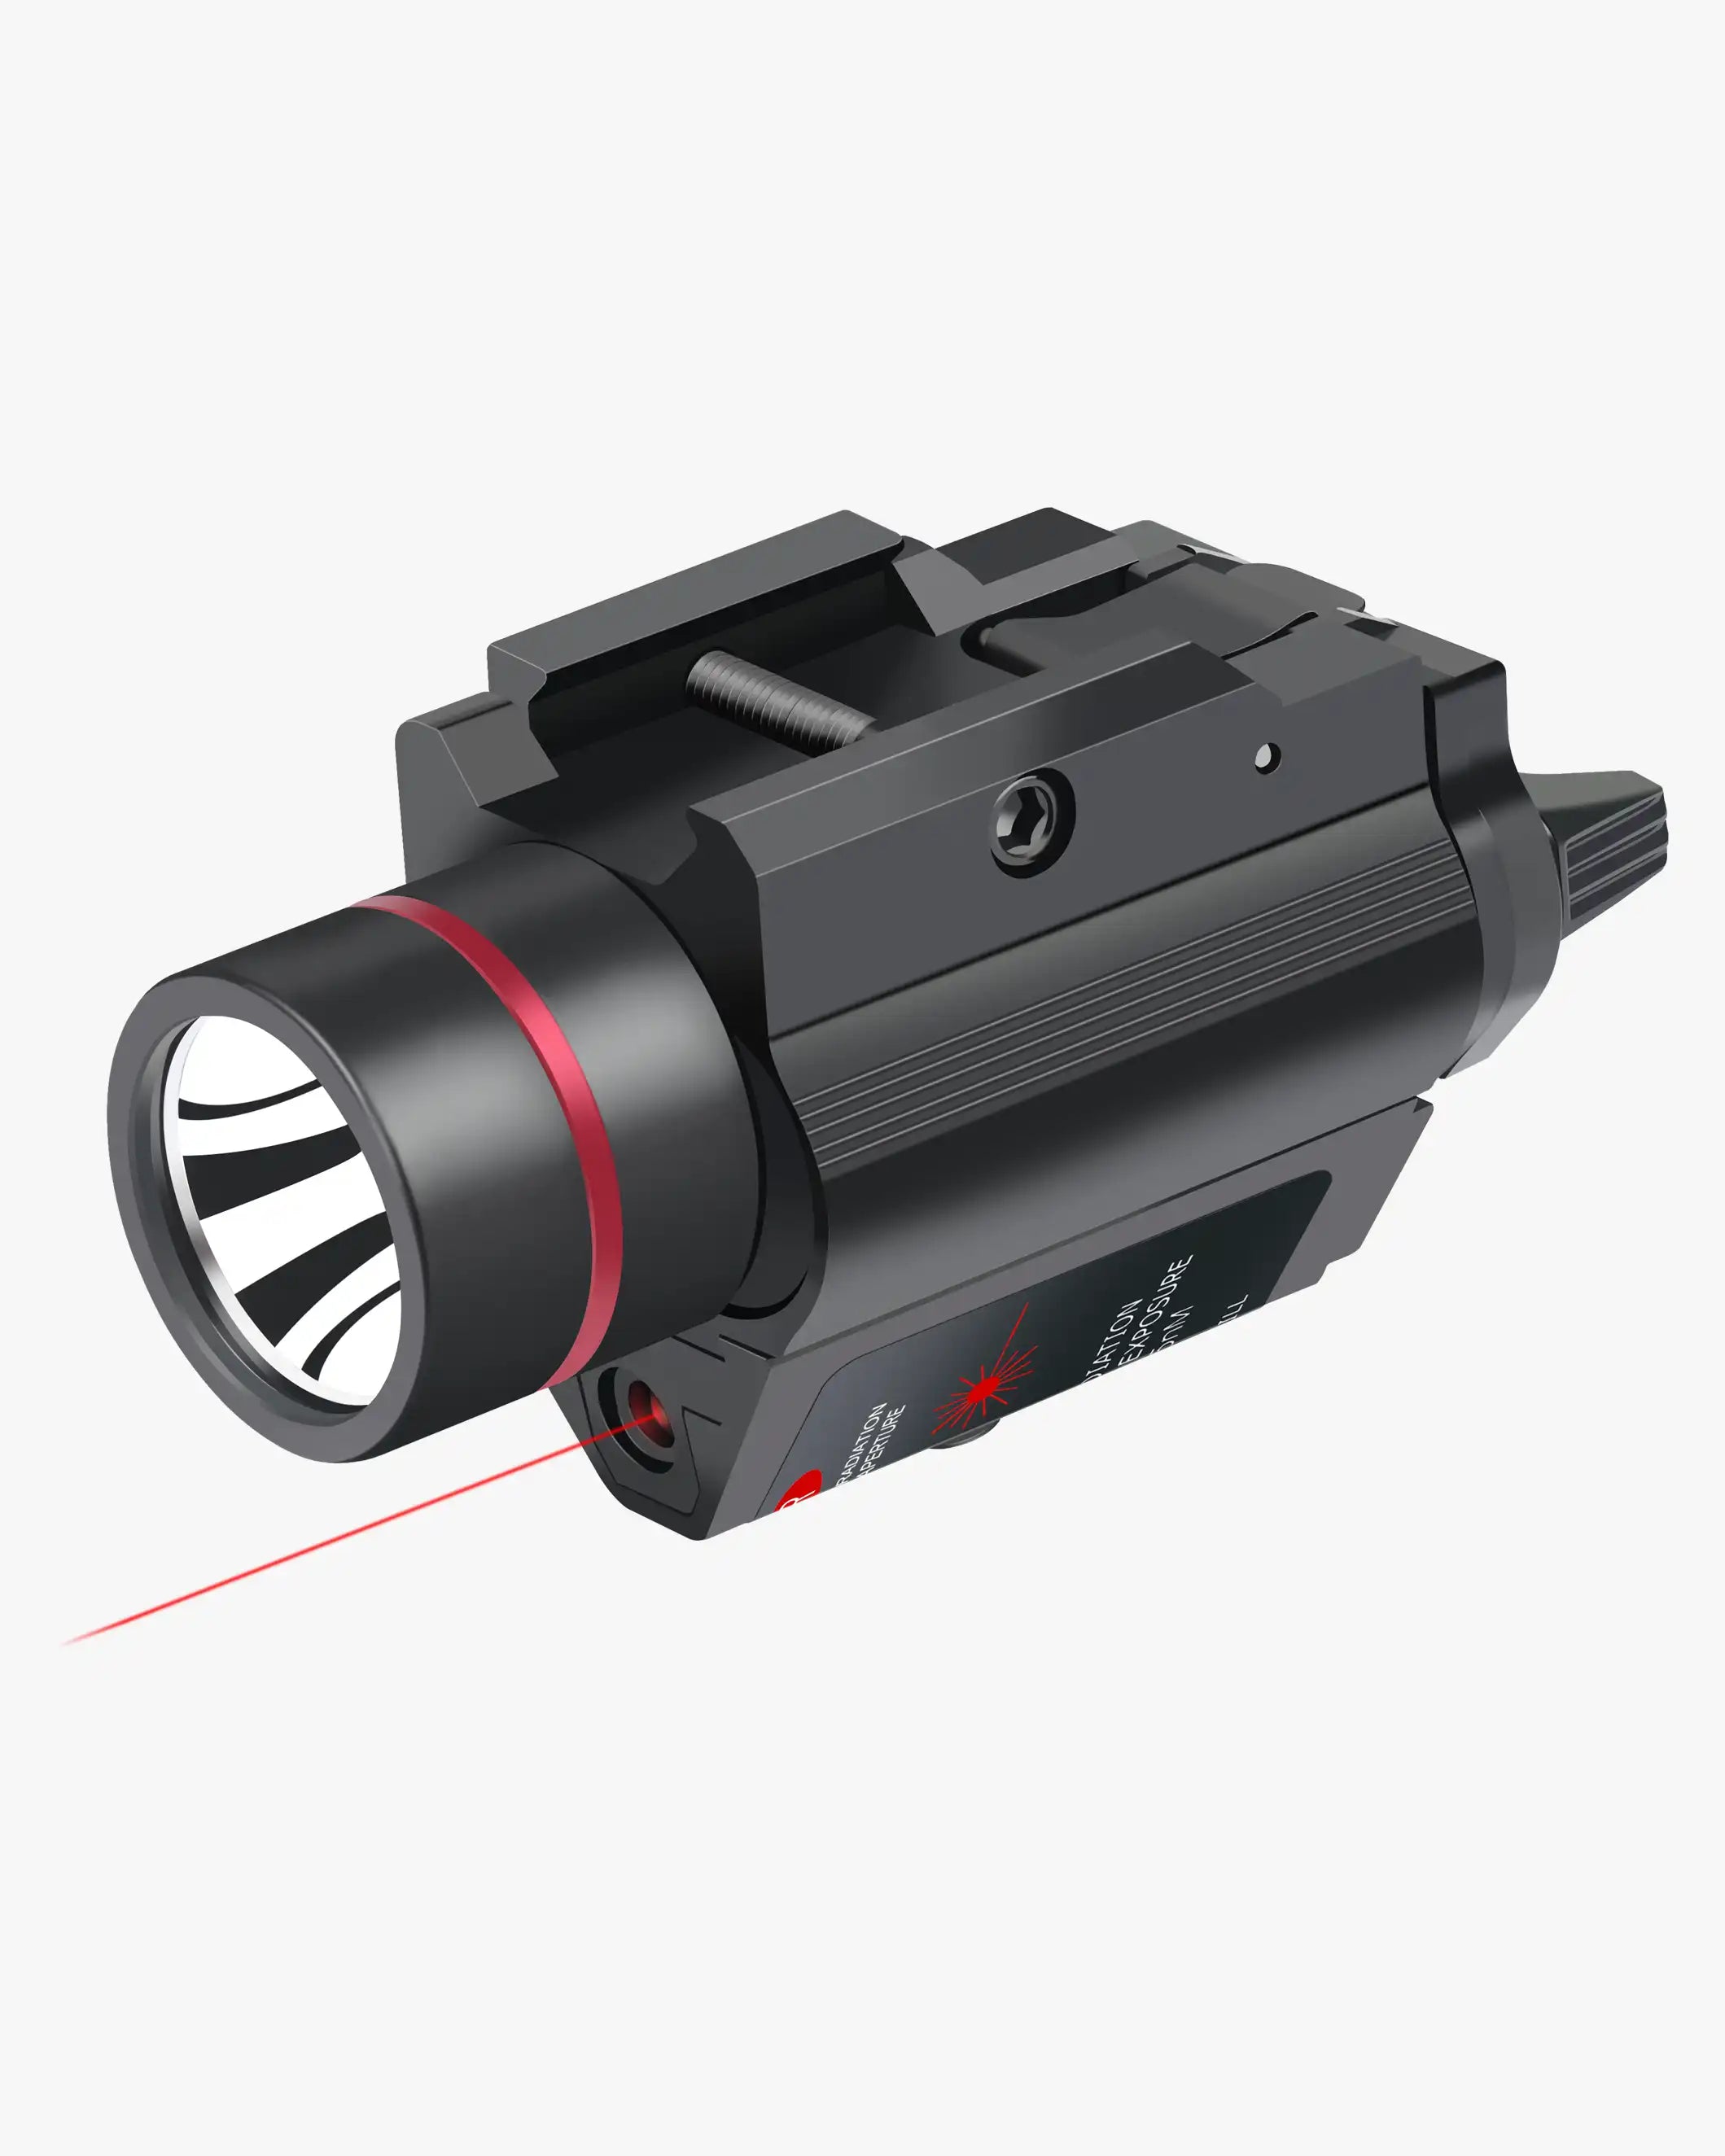 Feyachi LF-38 Lampe de poche laser rouge Combo – 200 lumens tactique